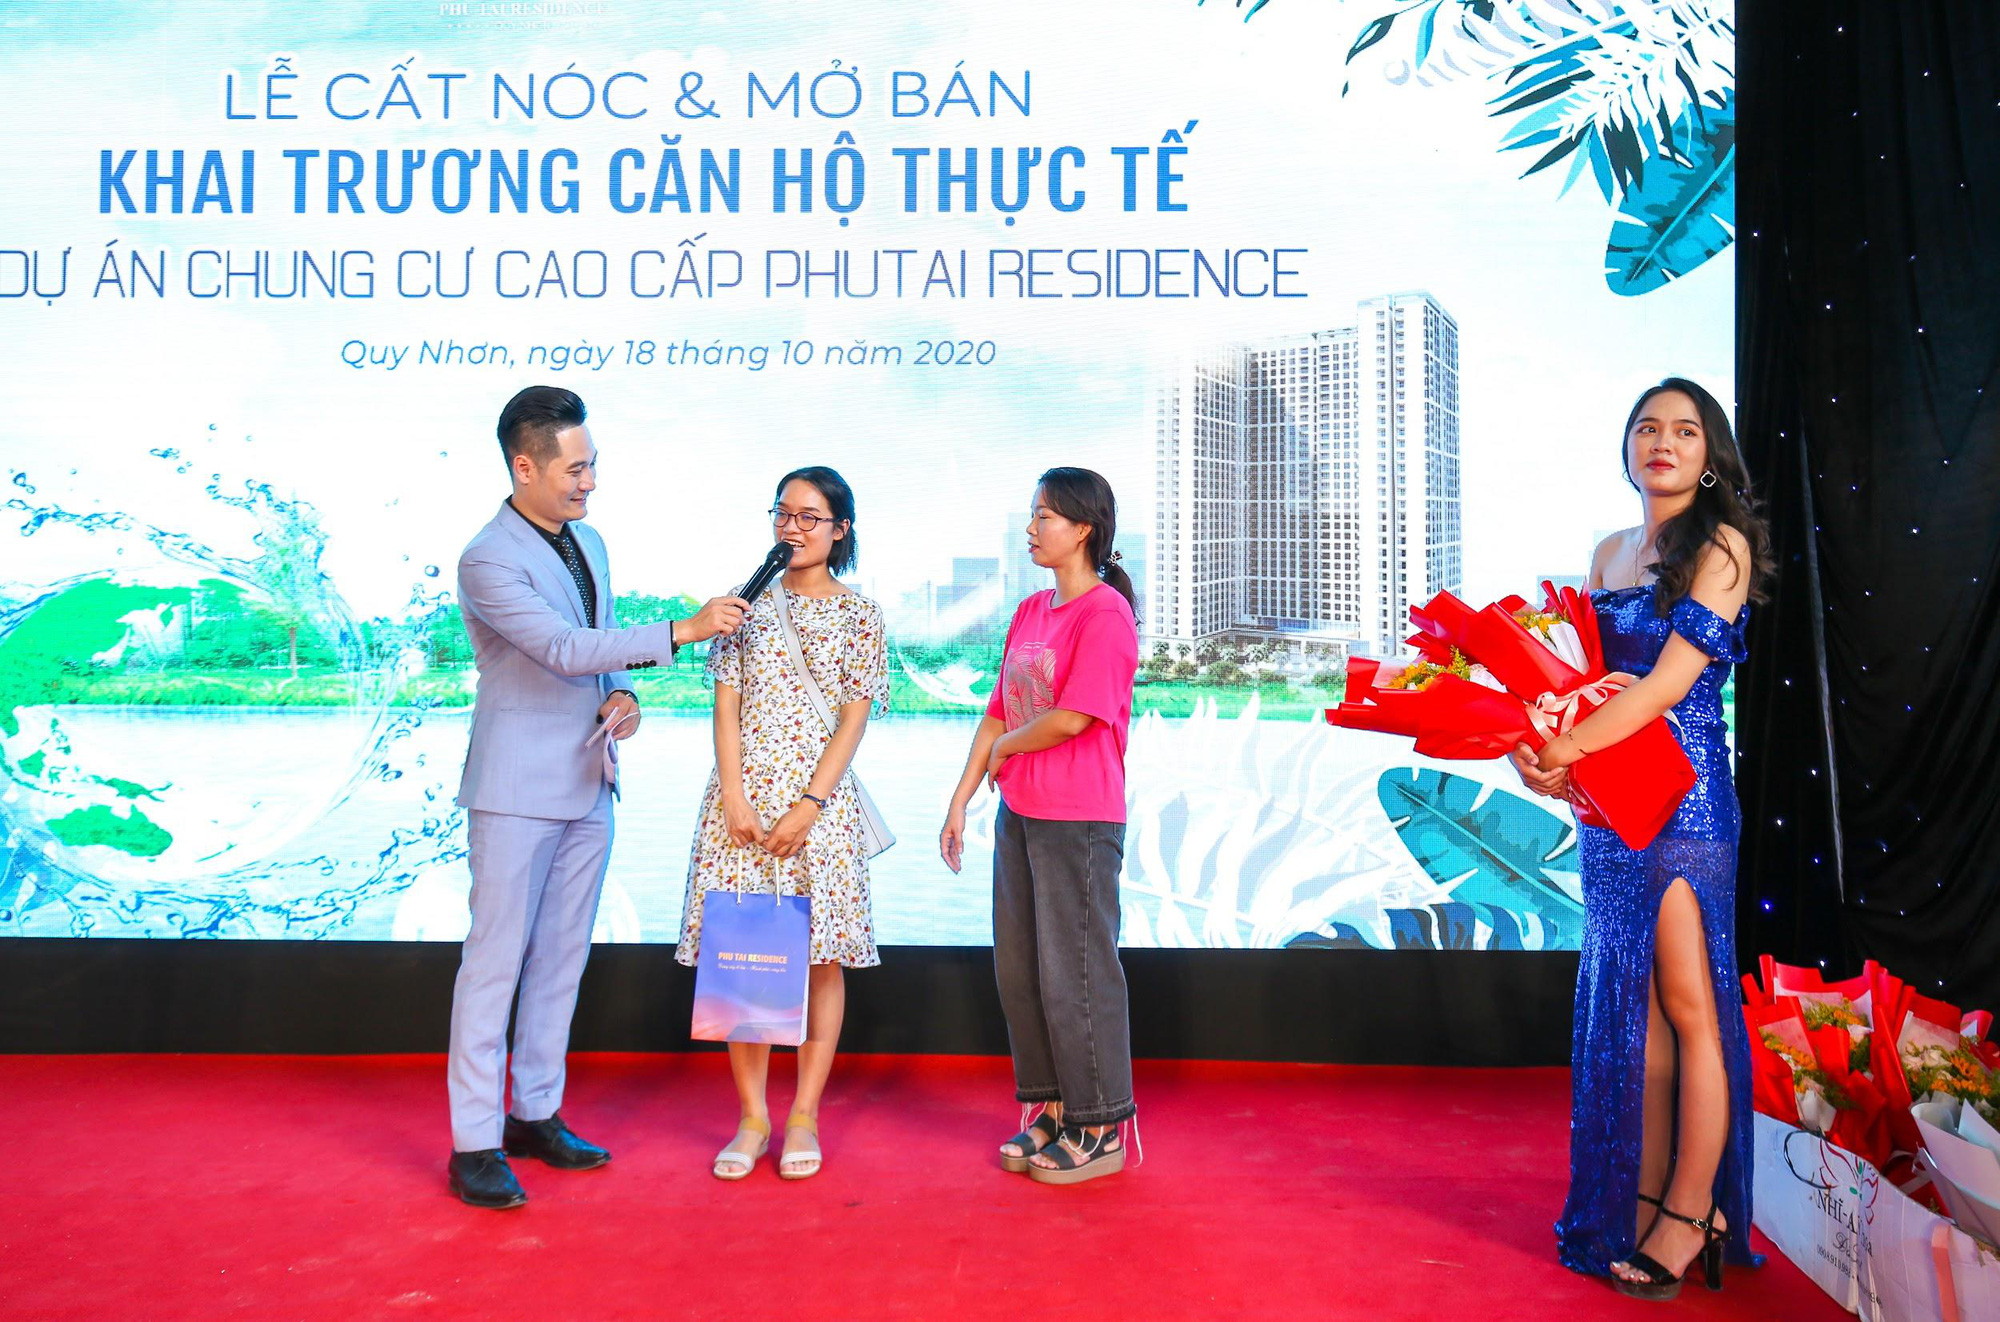 Phu Tai Residence trao tặng vàng SJC và xe SH 150i mừng lễ cất nóc - Ảnh 2.